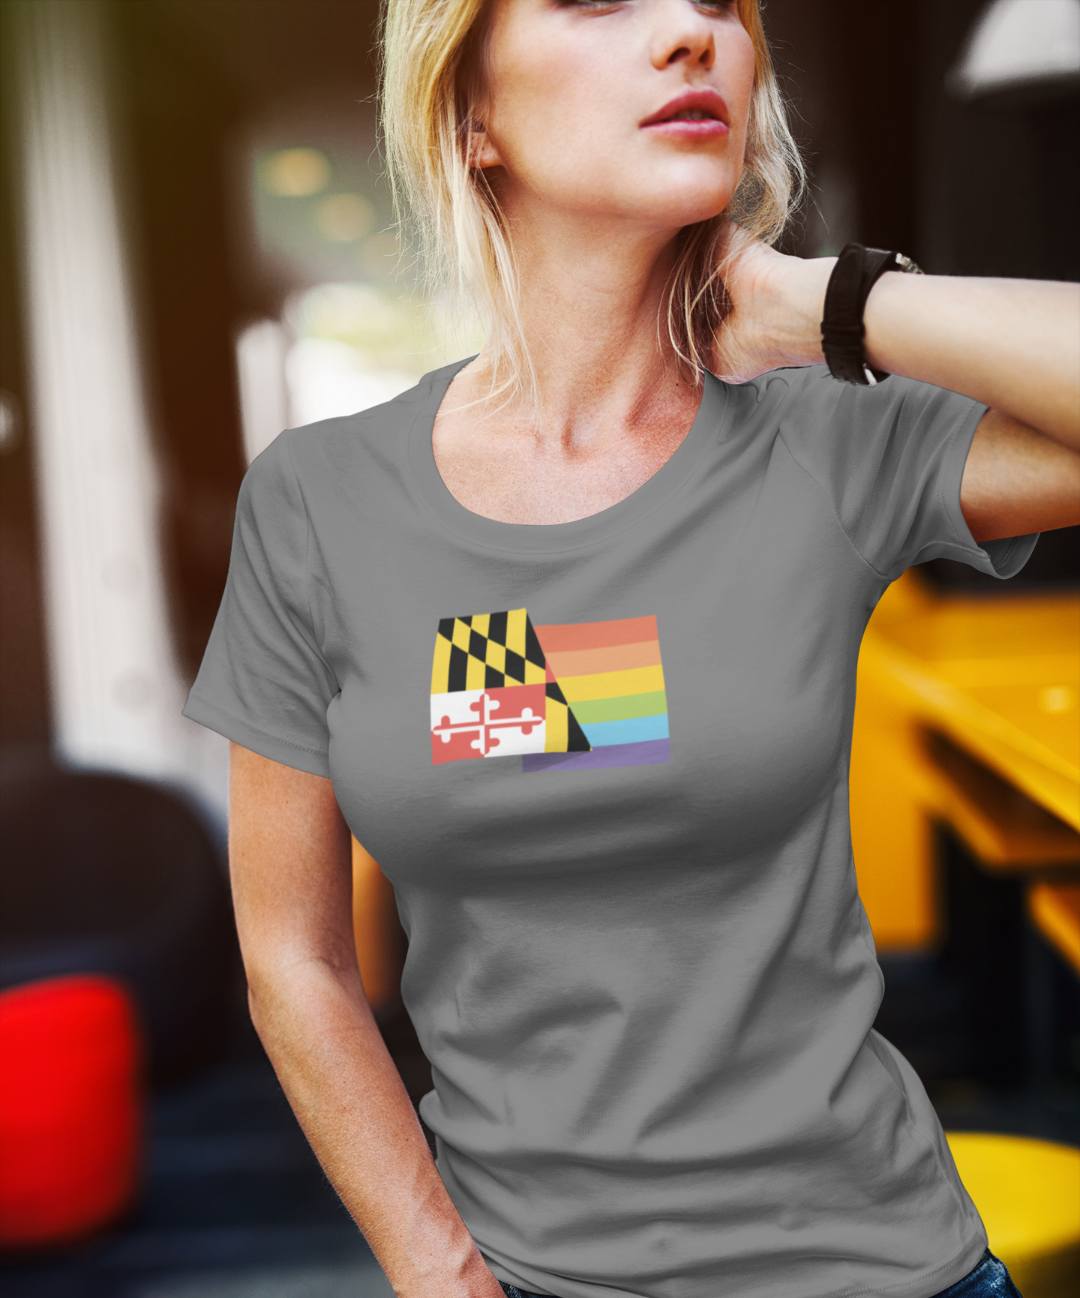 Maryland Pride - Women's Shirt